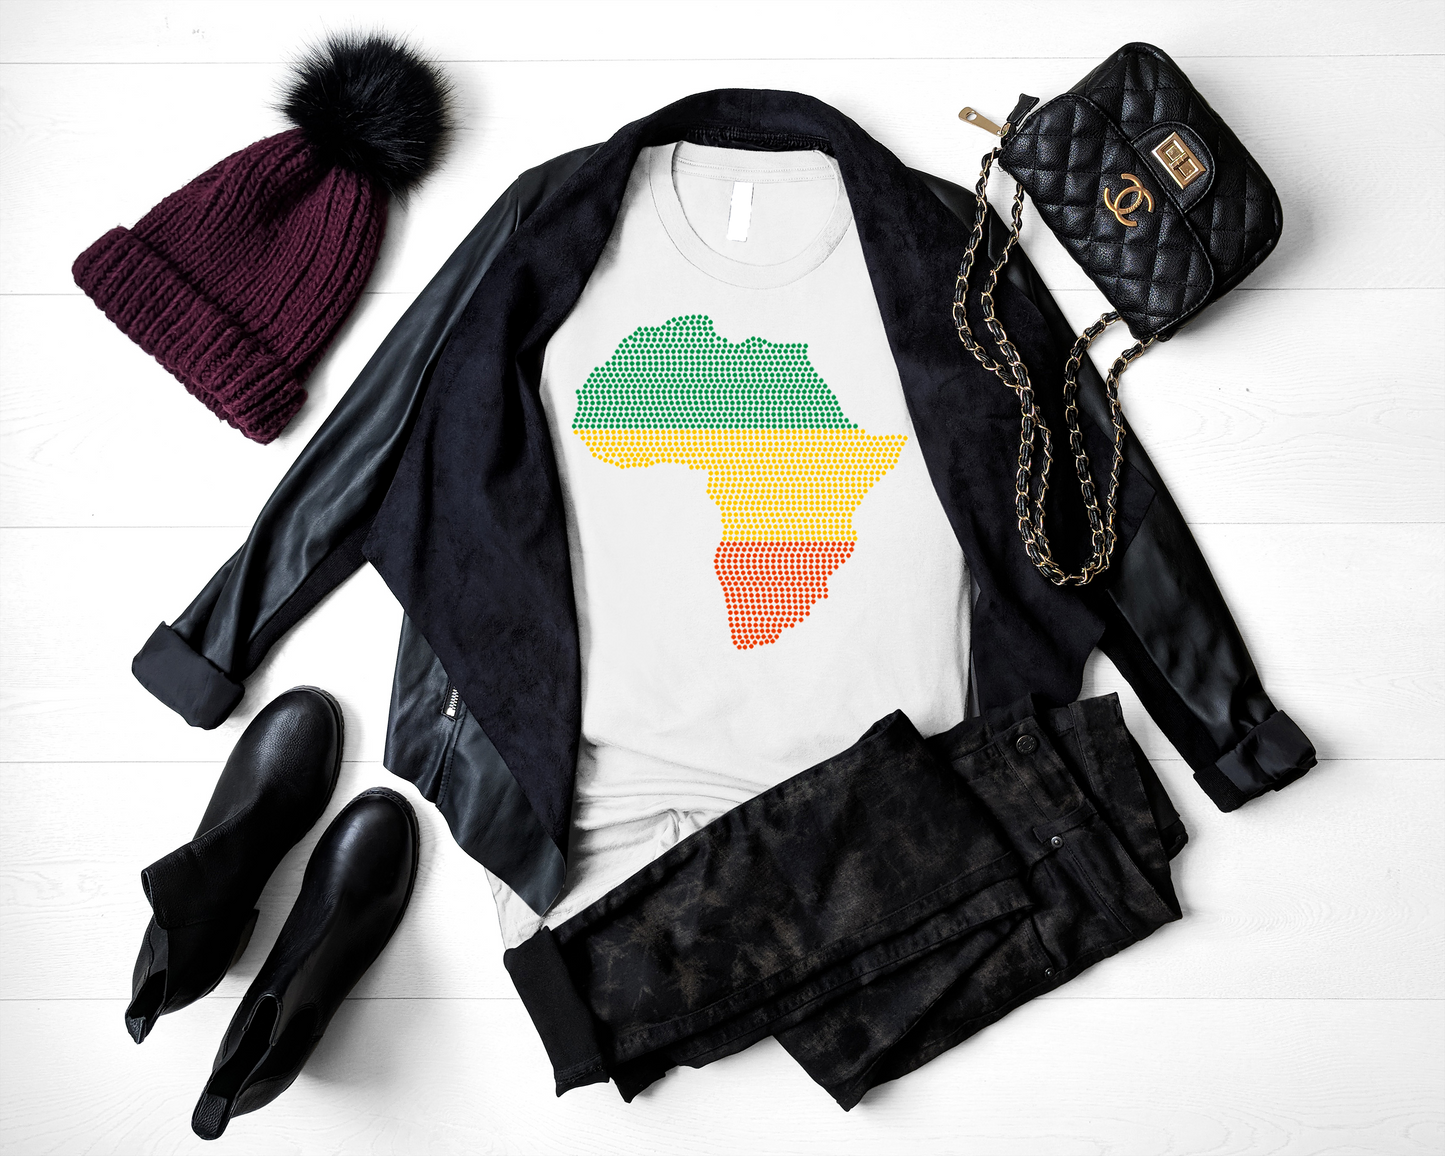 Africa Rhinestone T-Shirt